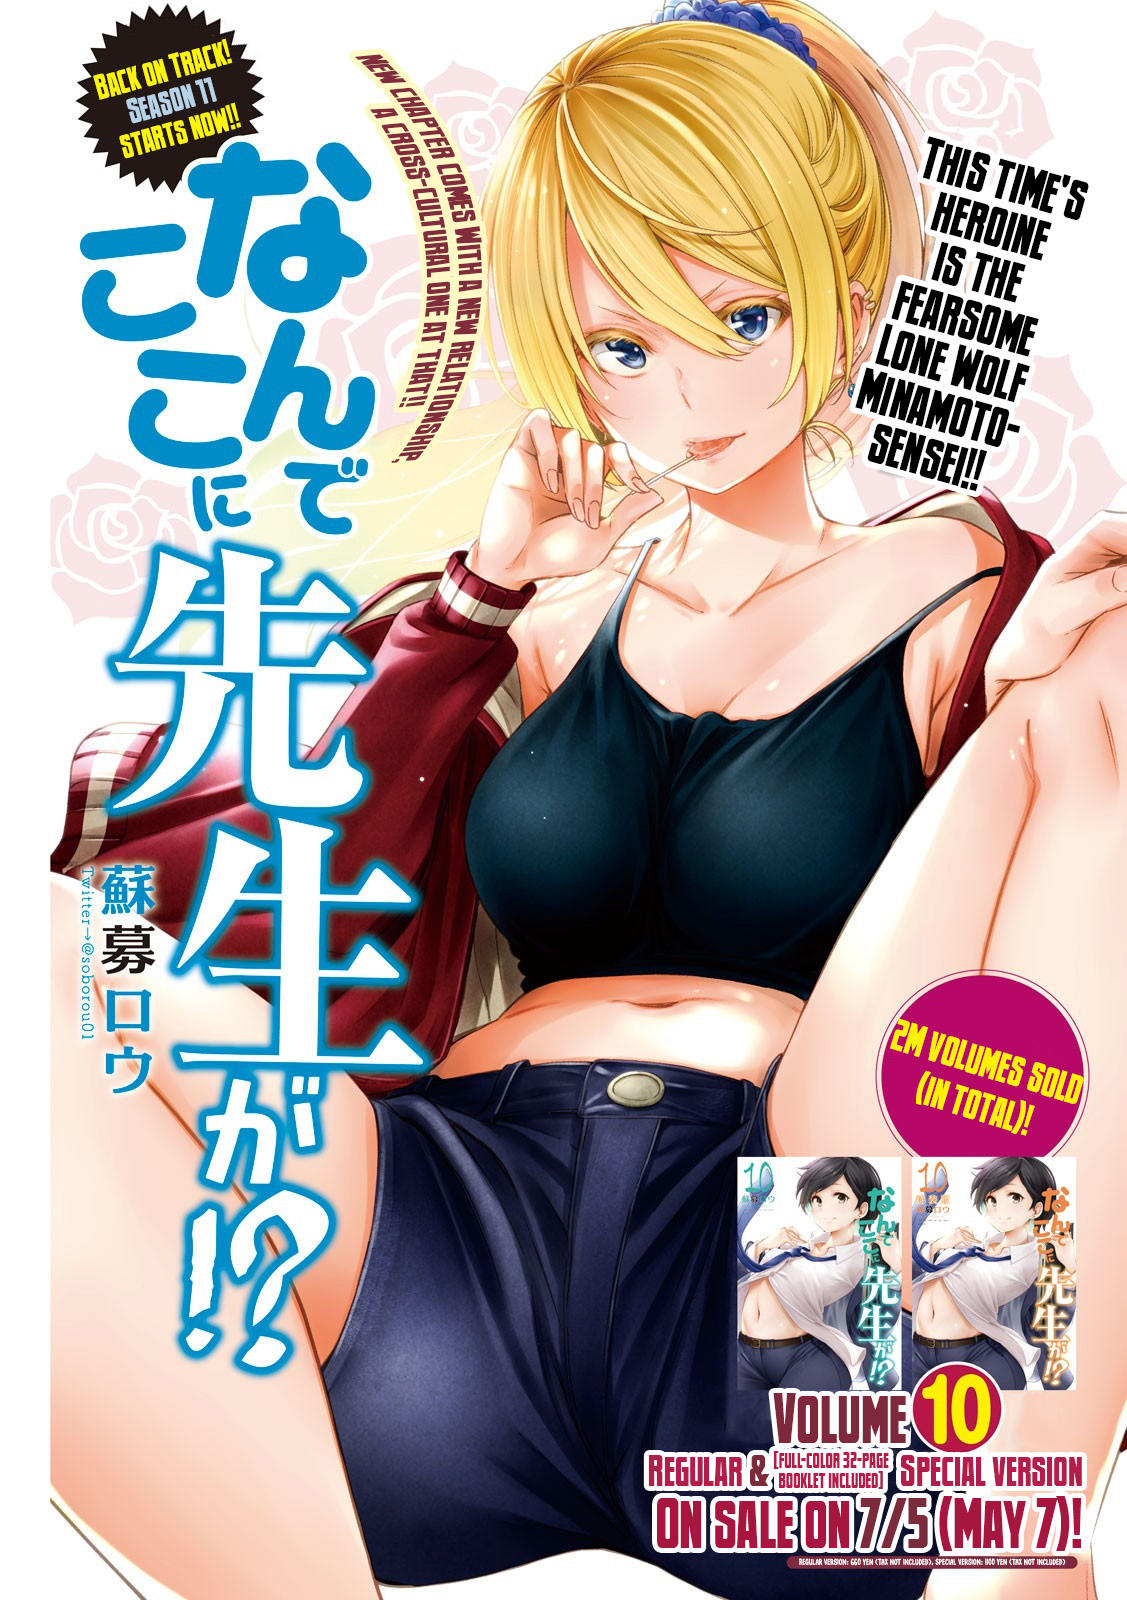 Nande Koko Ni Sensei Ga!? Novel, Chapter 110 - Novel Cool - Best